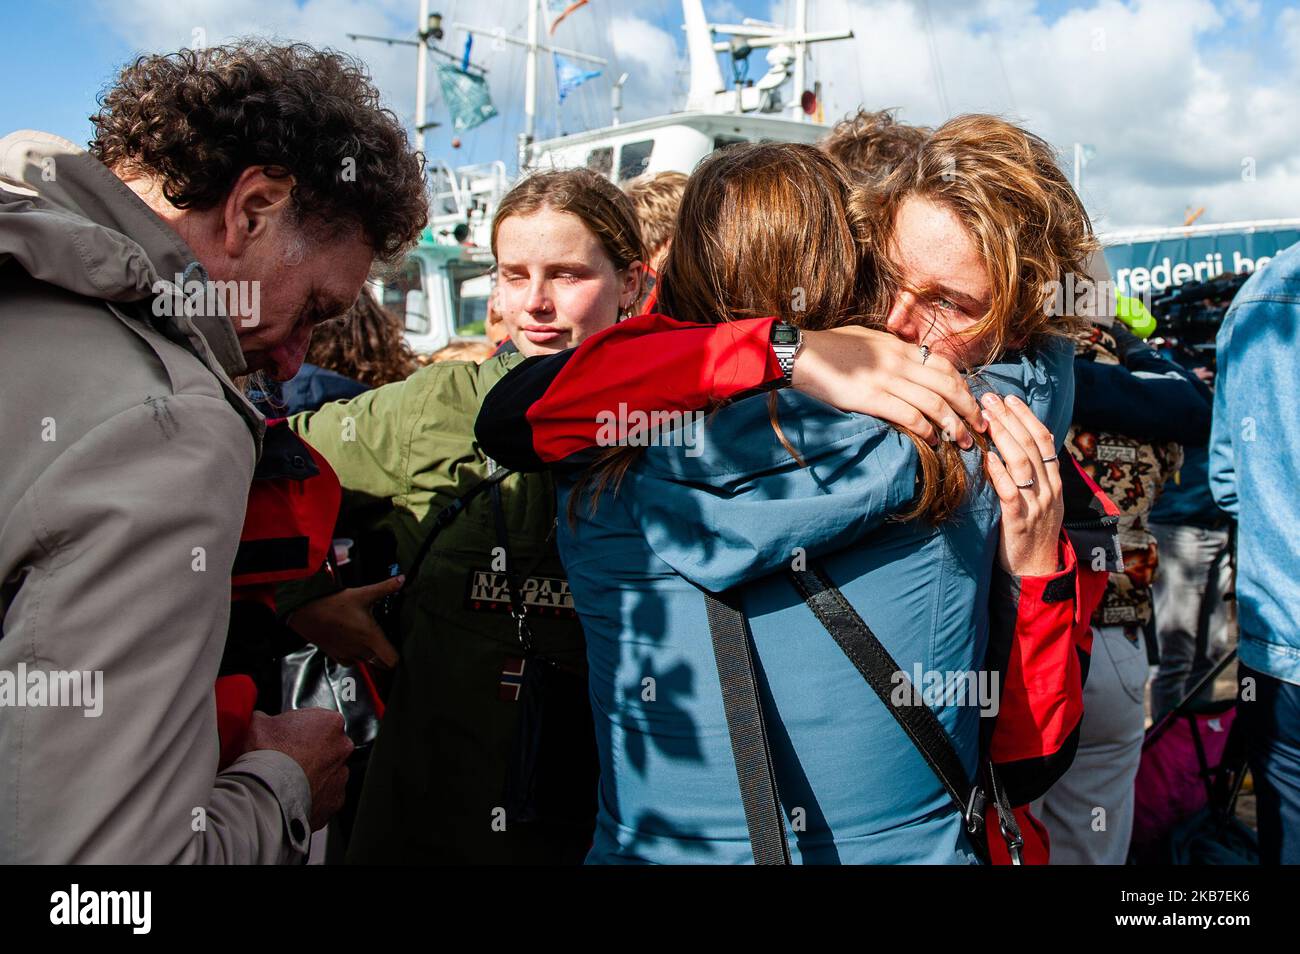 Anuna de Weber, militante belge du climat, dit Au revoir à sa famille, avant le départ du bateau d'où ils vont naviguer jusqu'à COP25 au Chili. Amsterdam, 2 octobre 2019. (Photo par Romy Arroyo Fernandez/NurPhoto) Banque D'Images